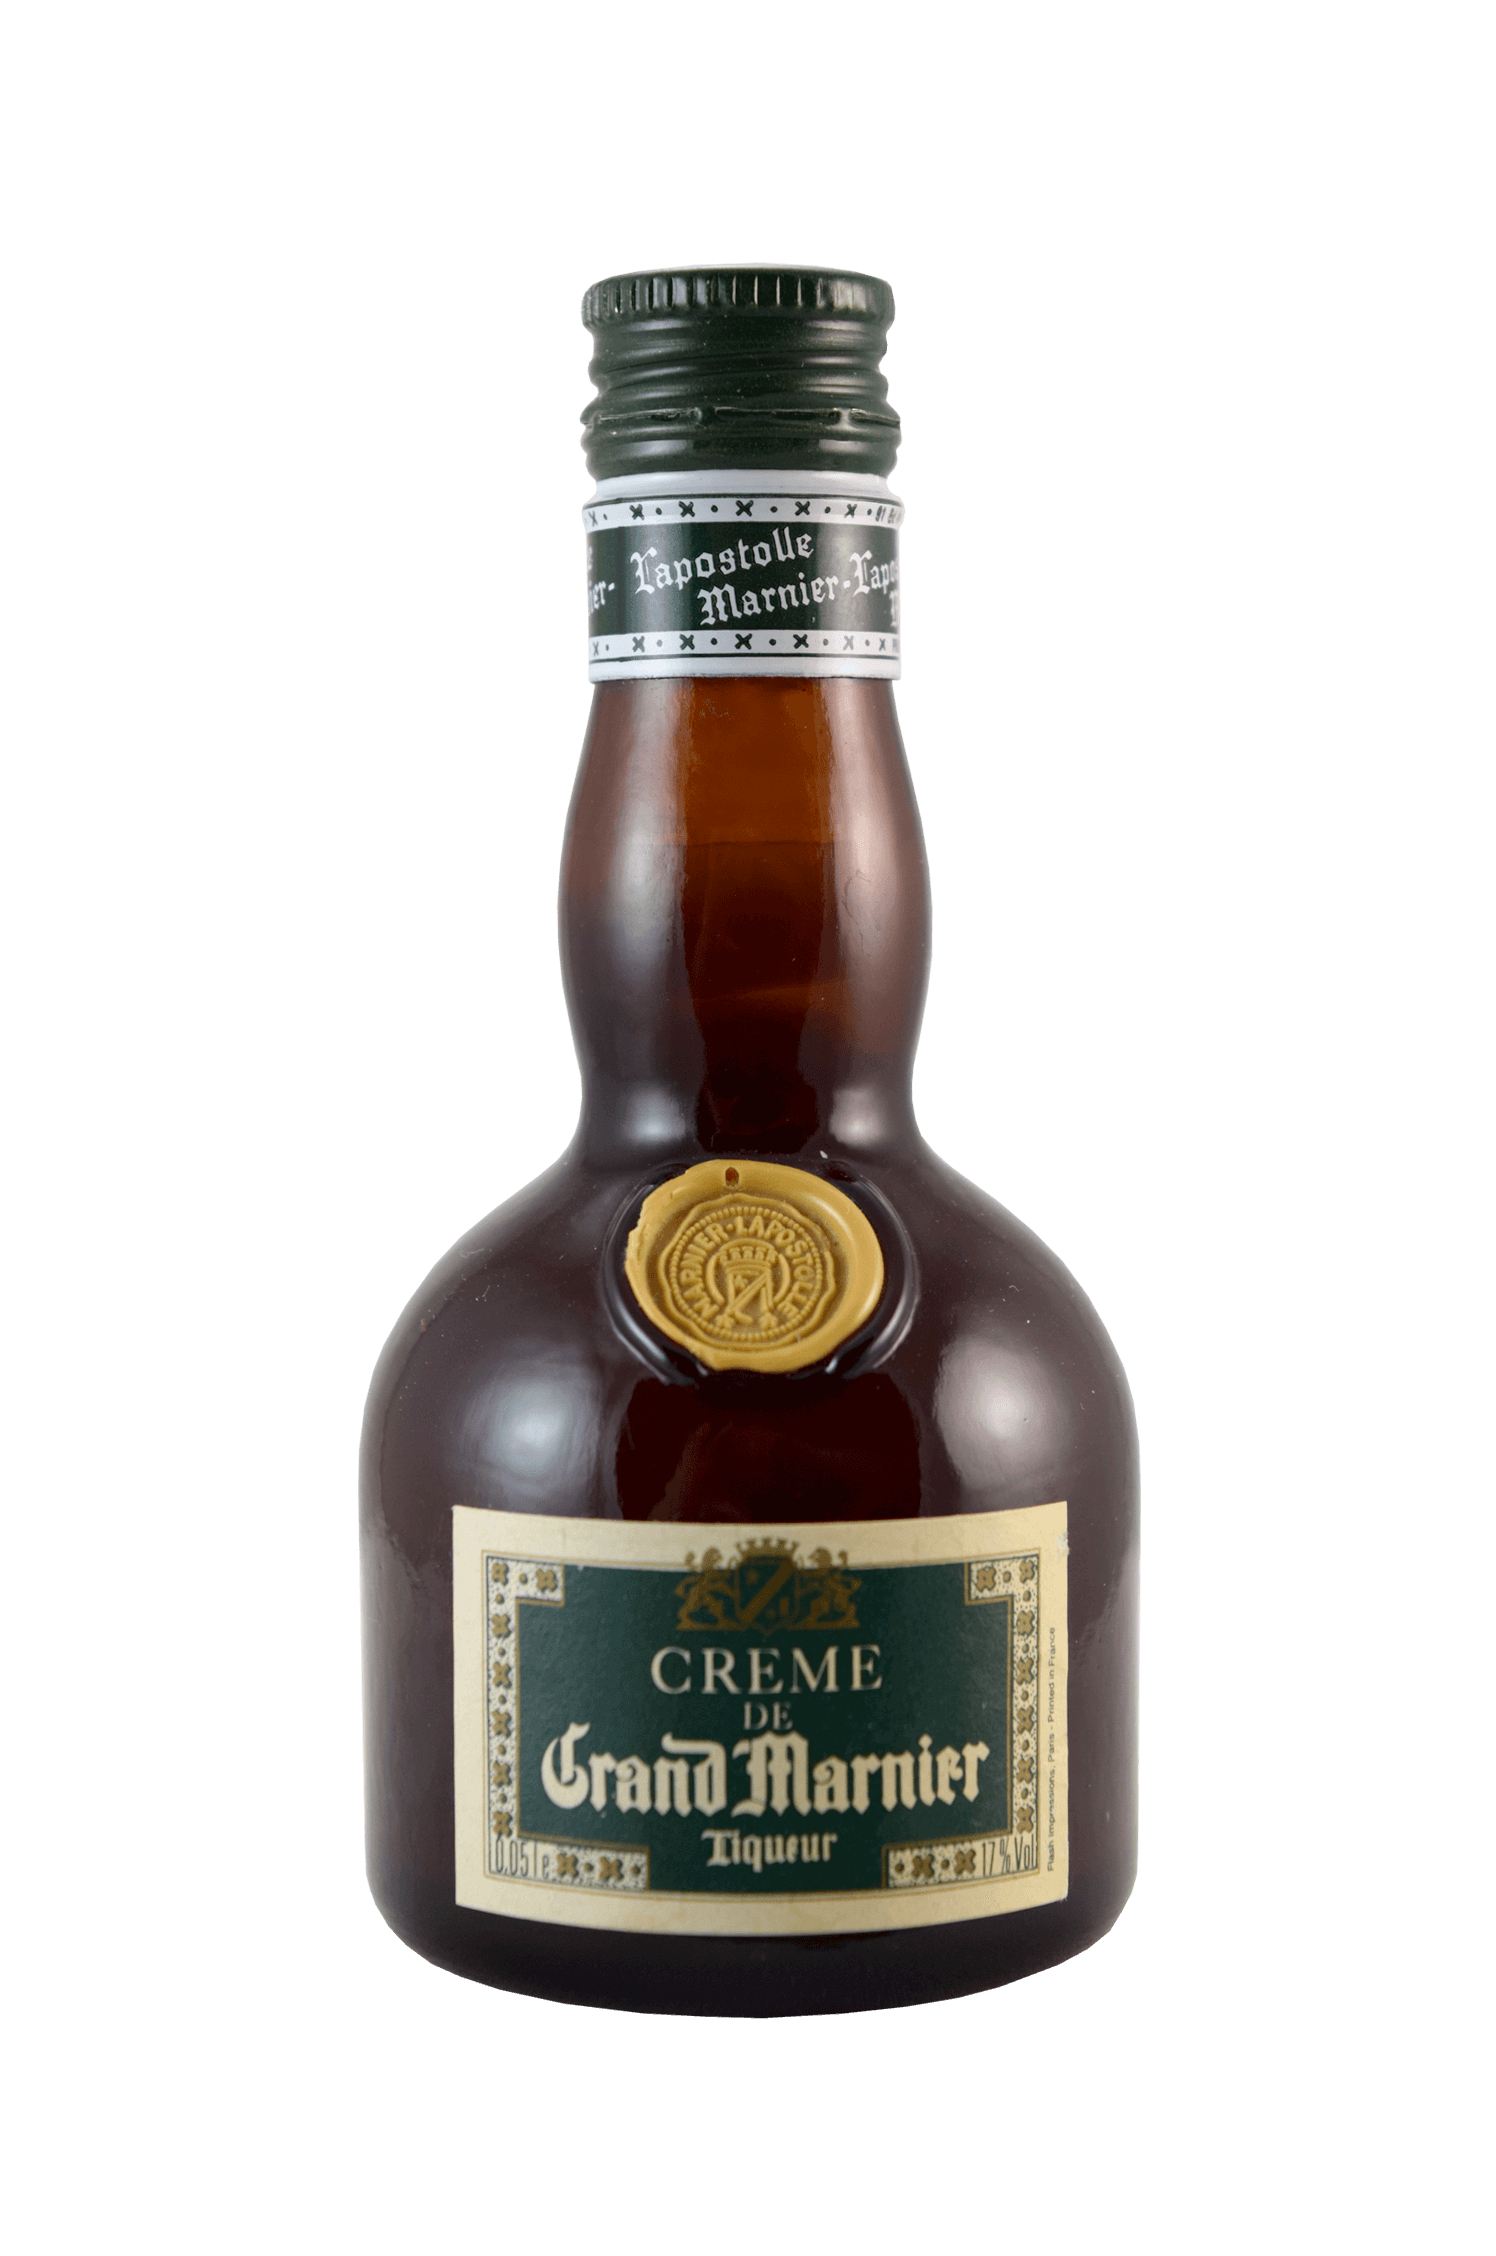 Grand Marnier Liqueur